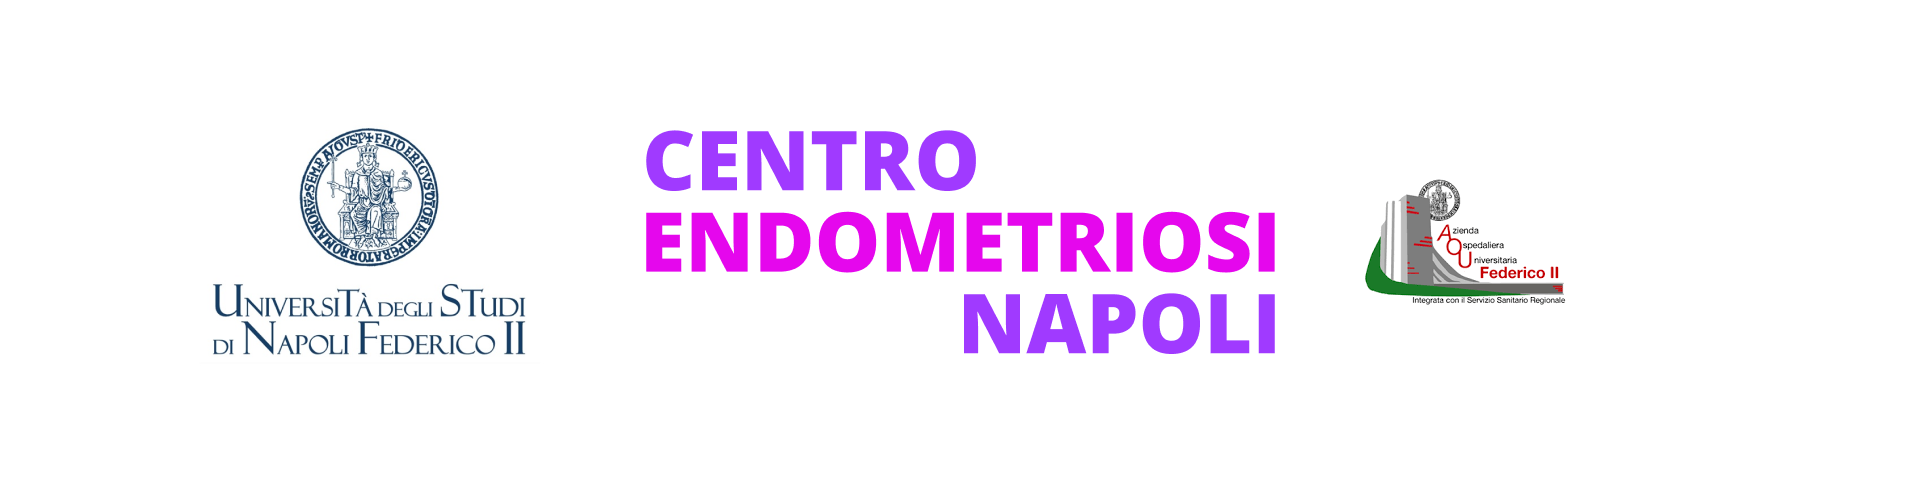 Centro Endometriosi Napoli